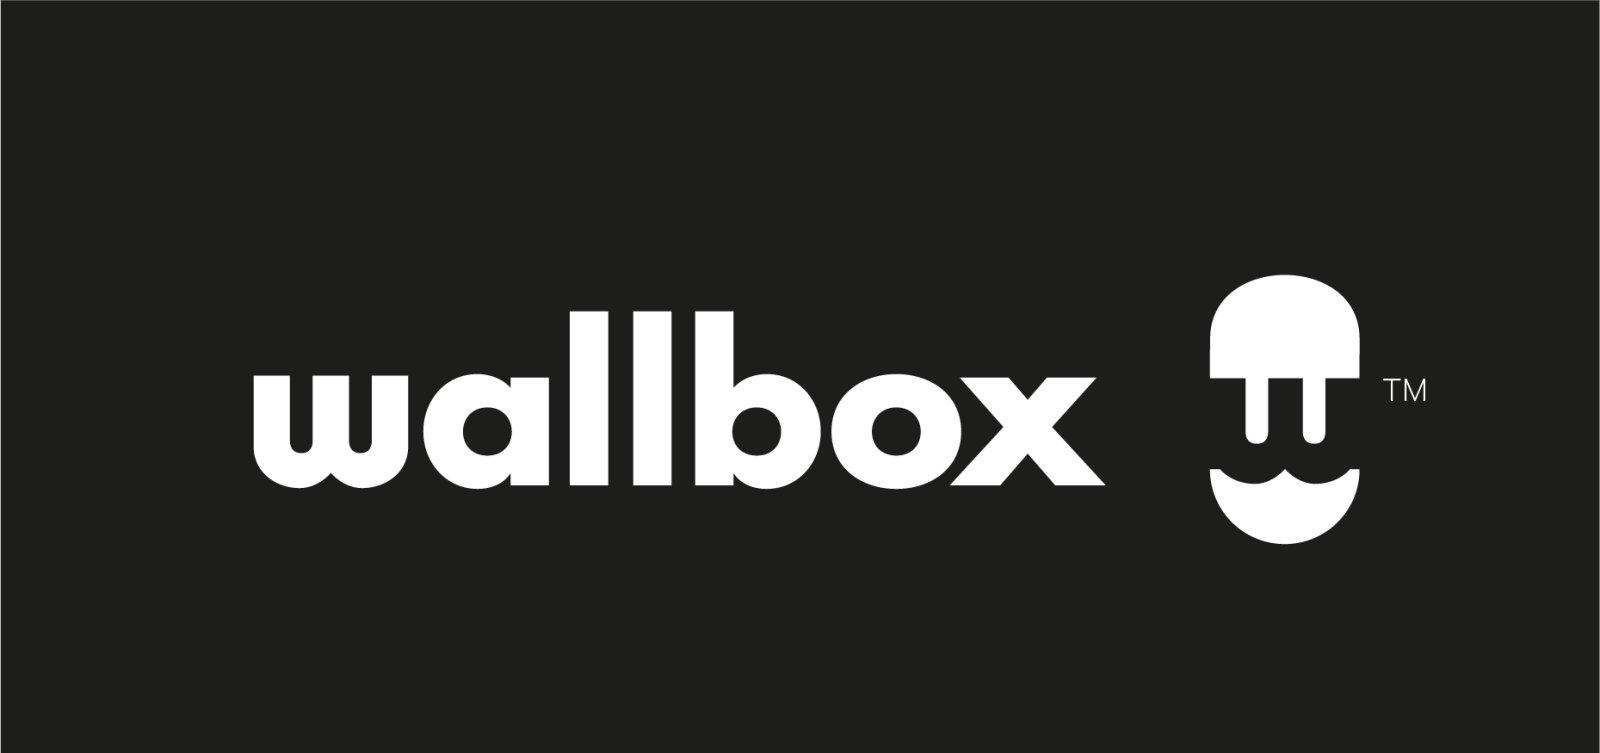 Wallbox Logo